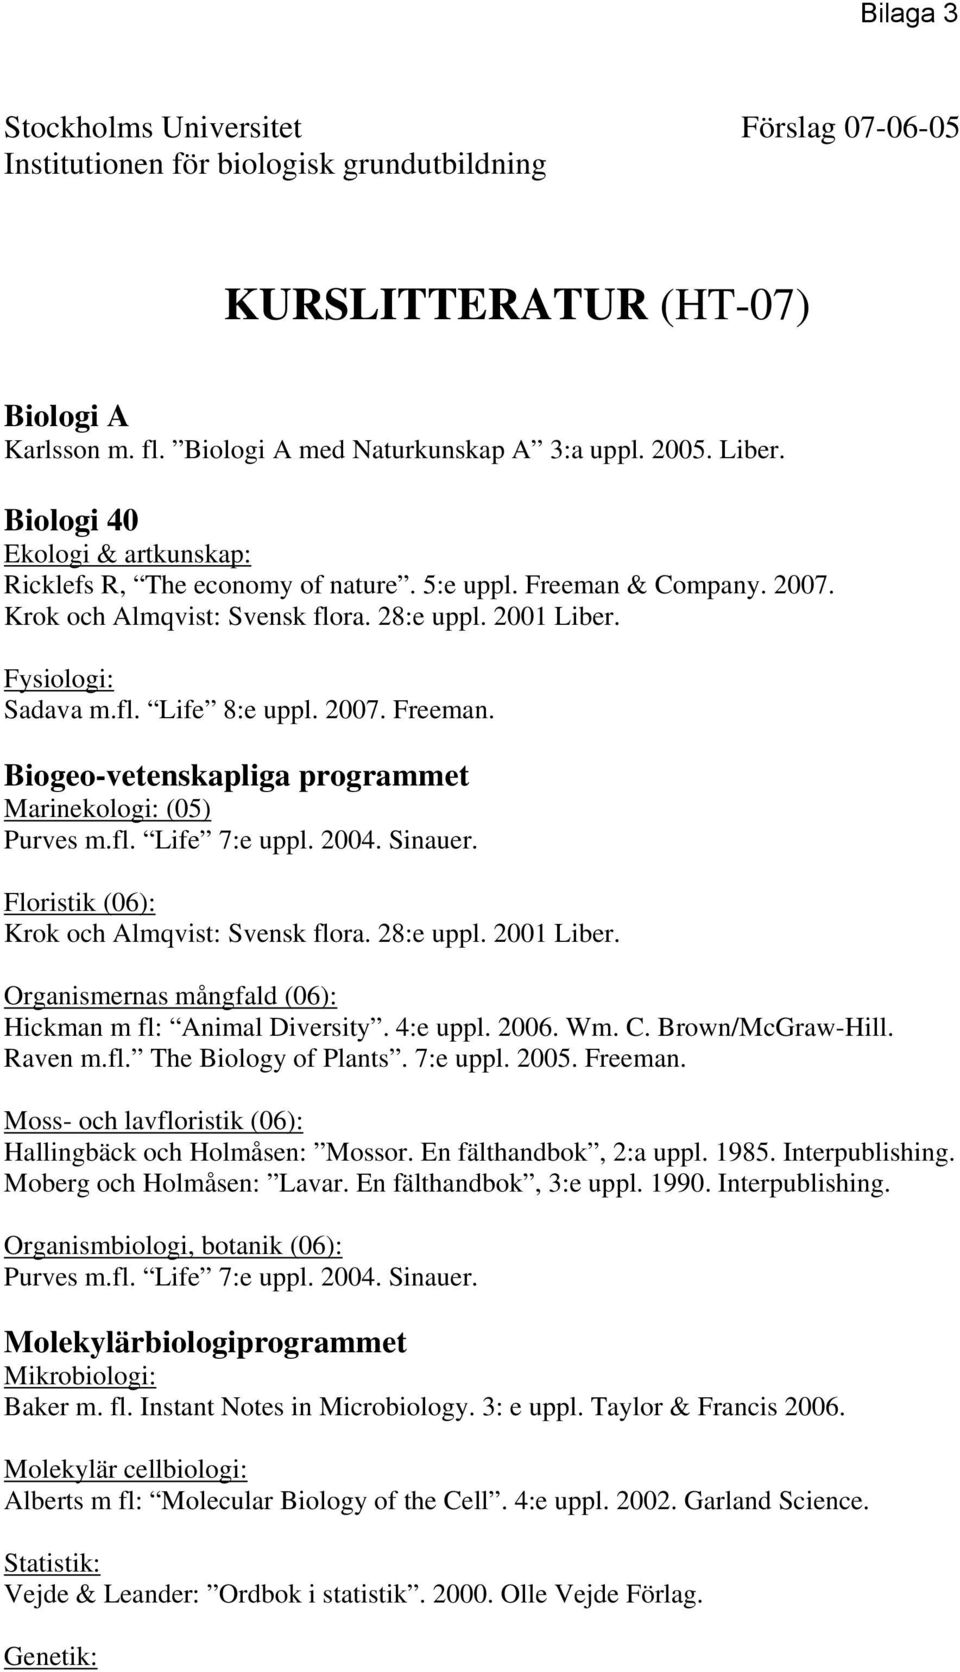 2007. Freeman. Biogeo-vetenskapliga programmet Marinekologi: (05) Purves m.fl. Life 7:e uppl. 2004. Sinauer. Floristik (06): Krok och Almqvist: Svensk flora. 28:e uppl. 2001 Liber.